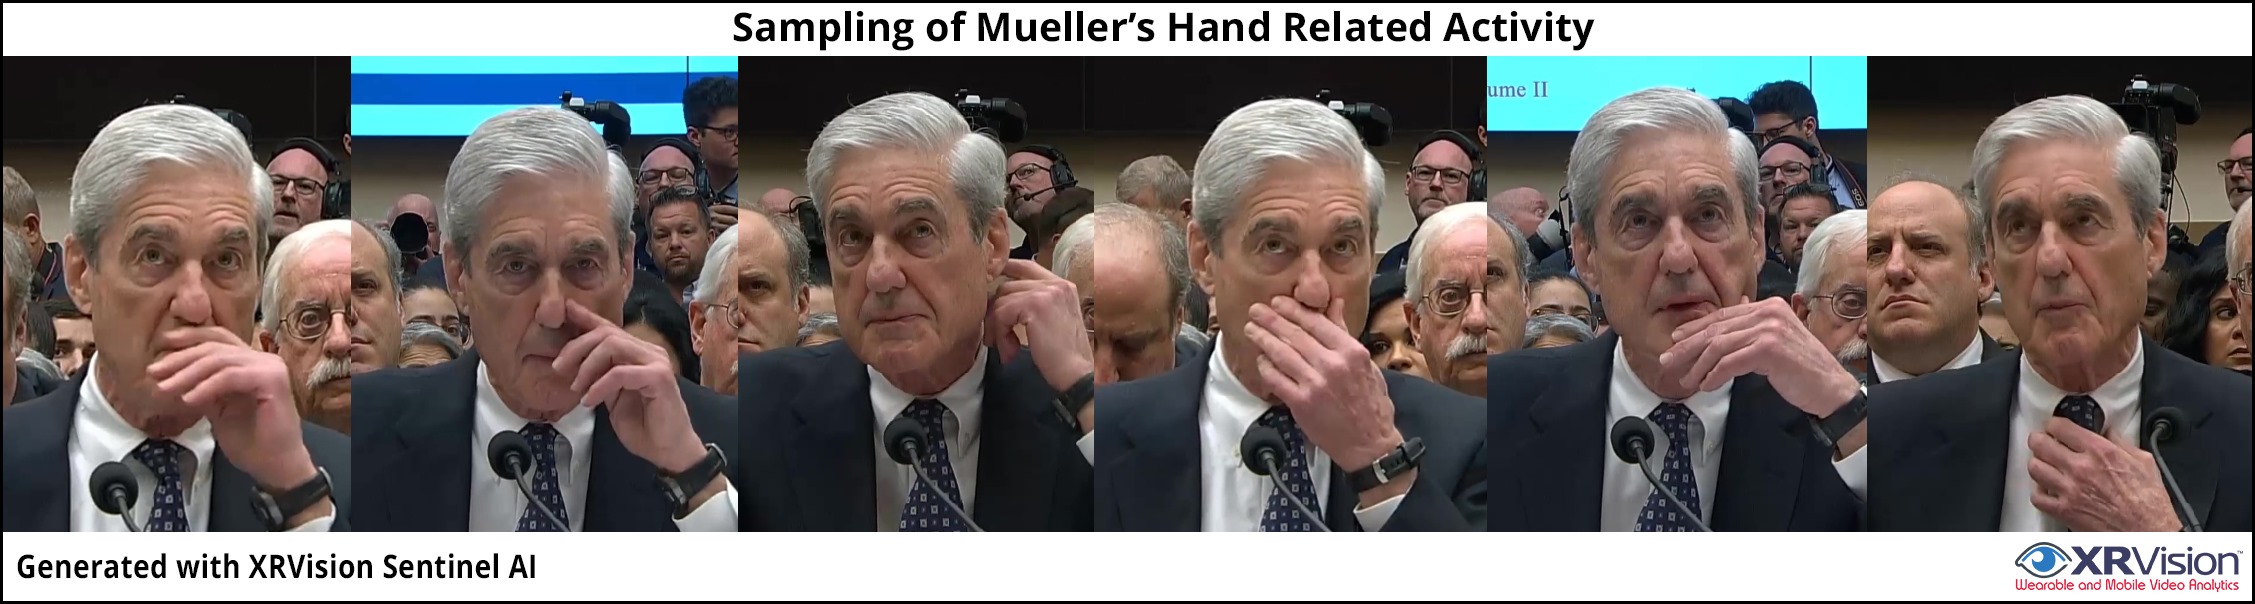 Sampling of Mueller’s Body Mechanics